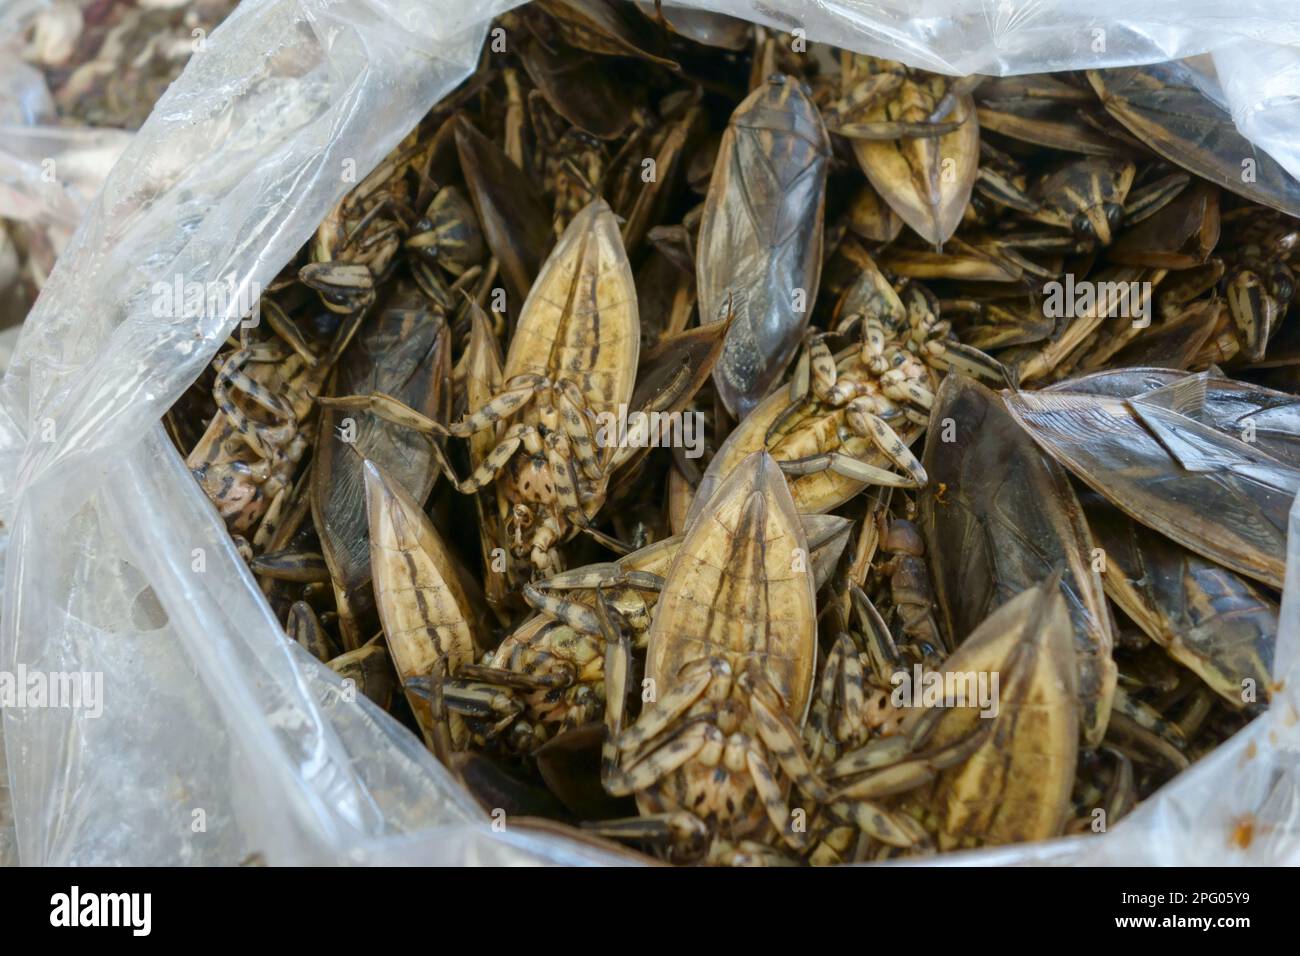 Des insectes géantes de l'eau (léthocerus indicus), dans une cabine alimentaire sur un marché de Bangkok, en Thaïlande Banque D'Images